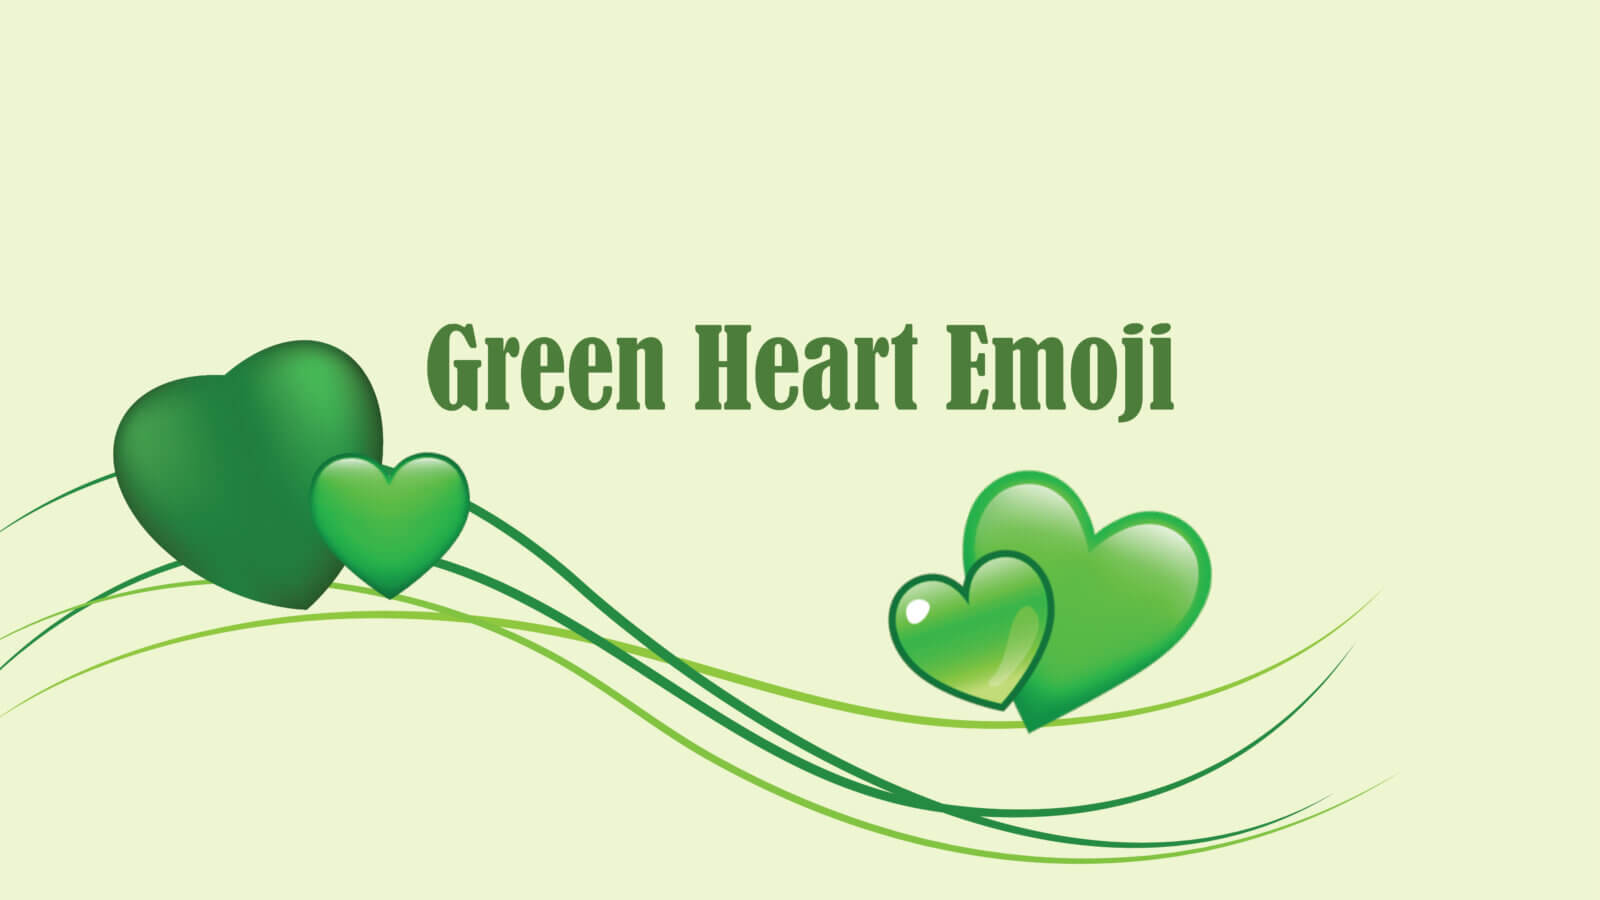 Significado corazón verde